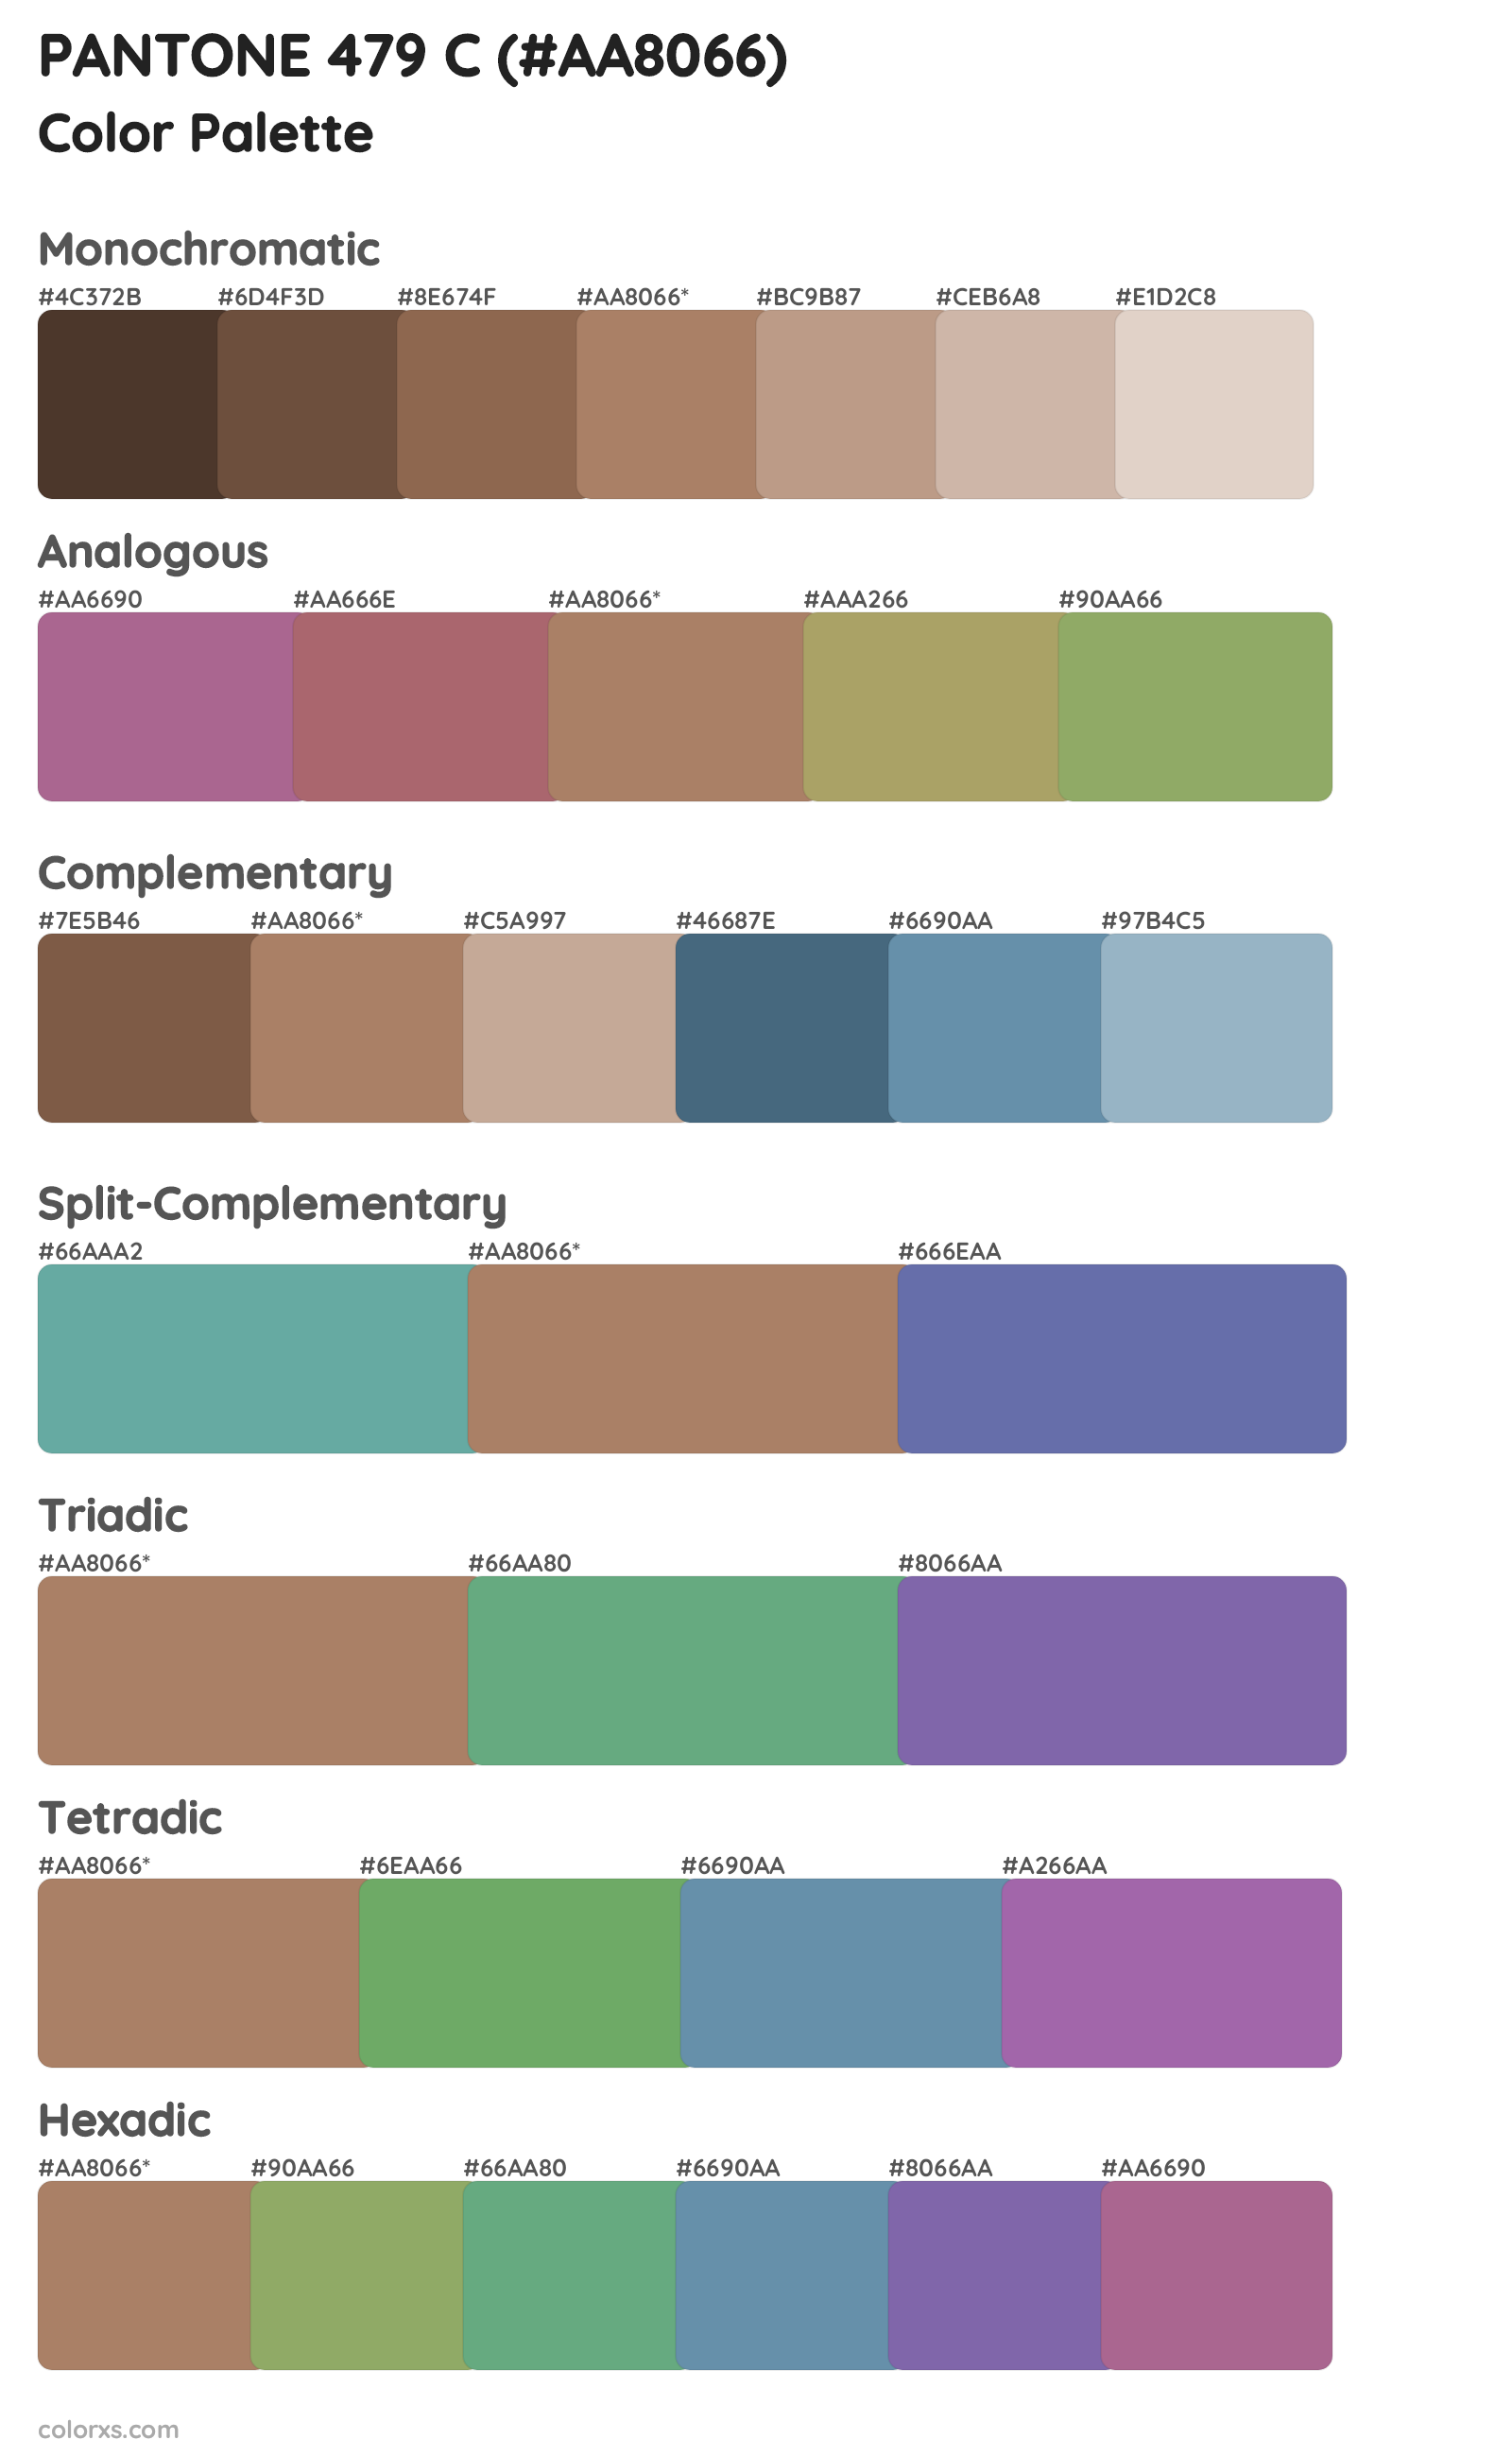 PANTONE 479 C Color Scheme Palettes